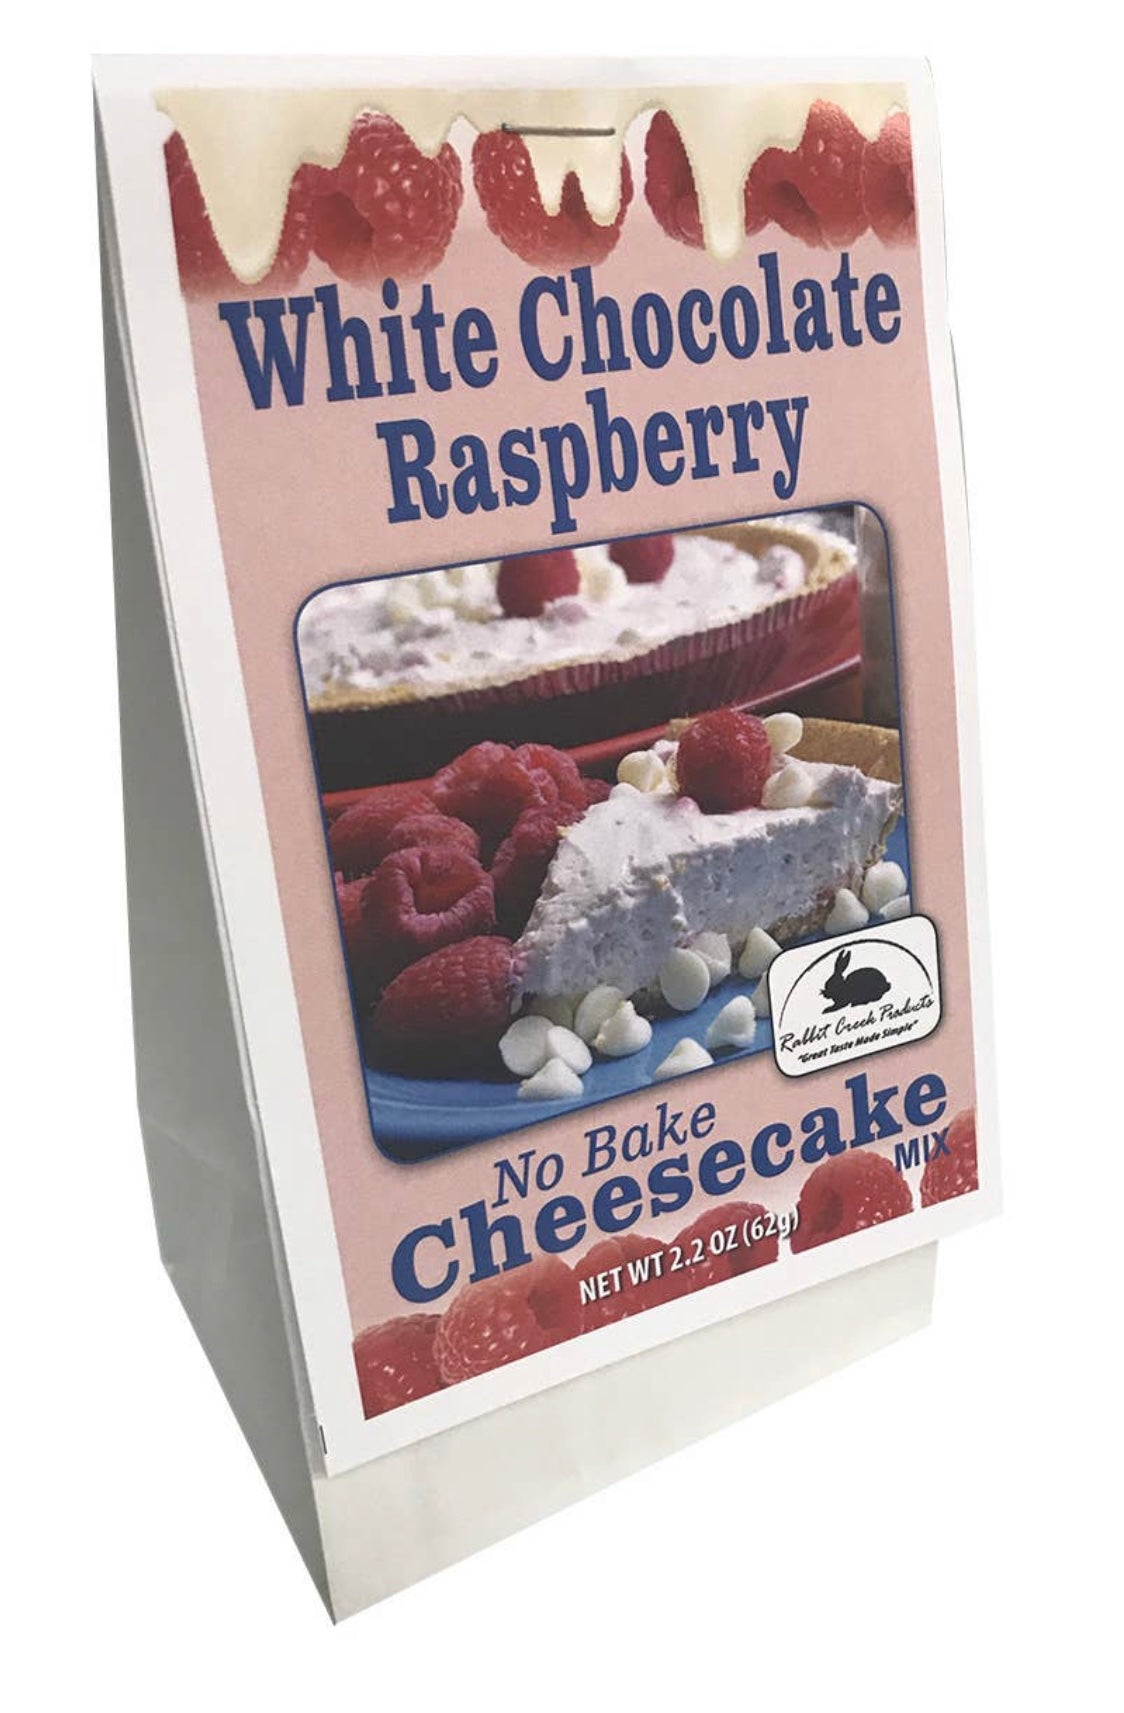 White Chocolate Raspberry Cheesecake Mix